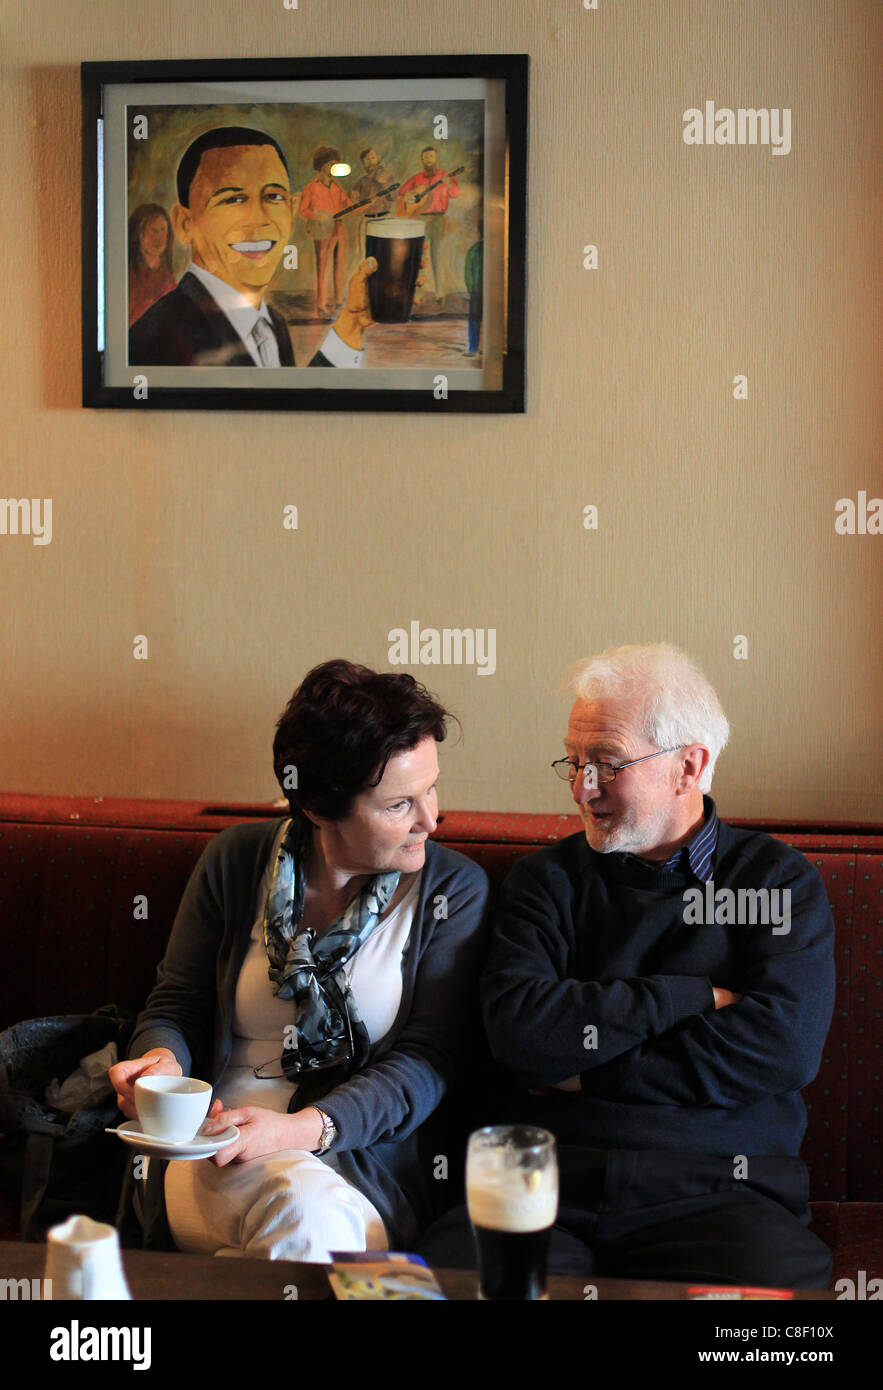 Zwei ältere Leute genießen ein Bier und eine Tasse Tee als ein Bild der US-Präsident Barack Obama über ihnen in einem irischen Pub hängt Stockfoto